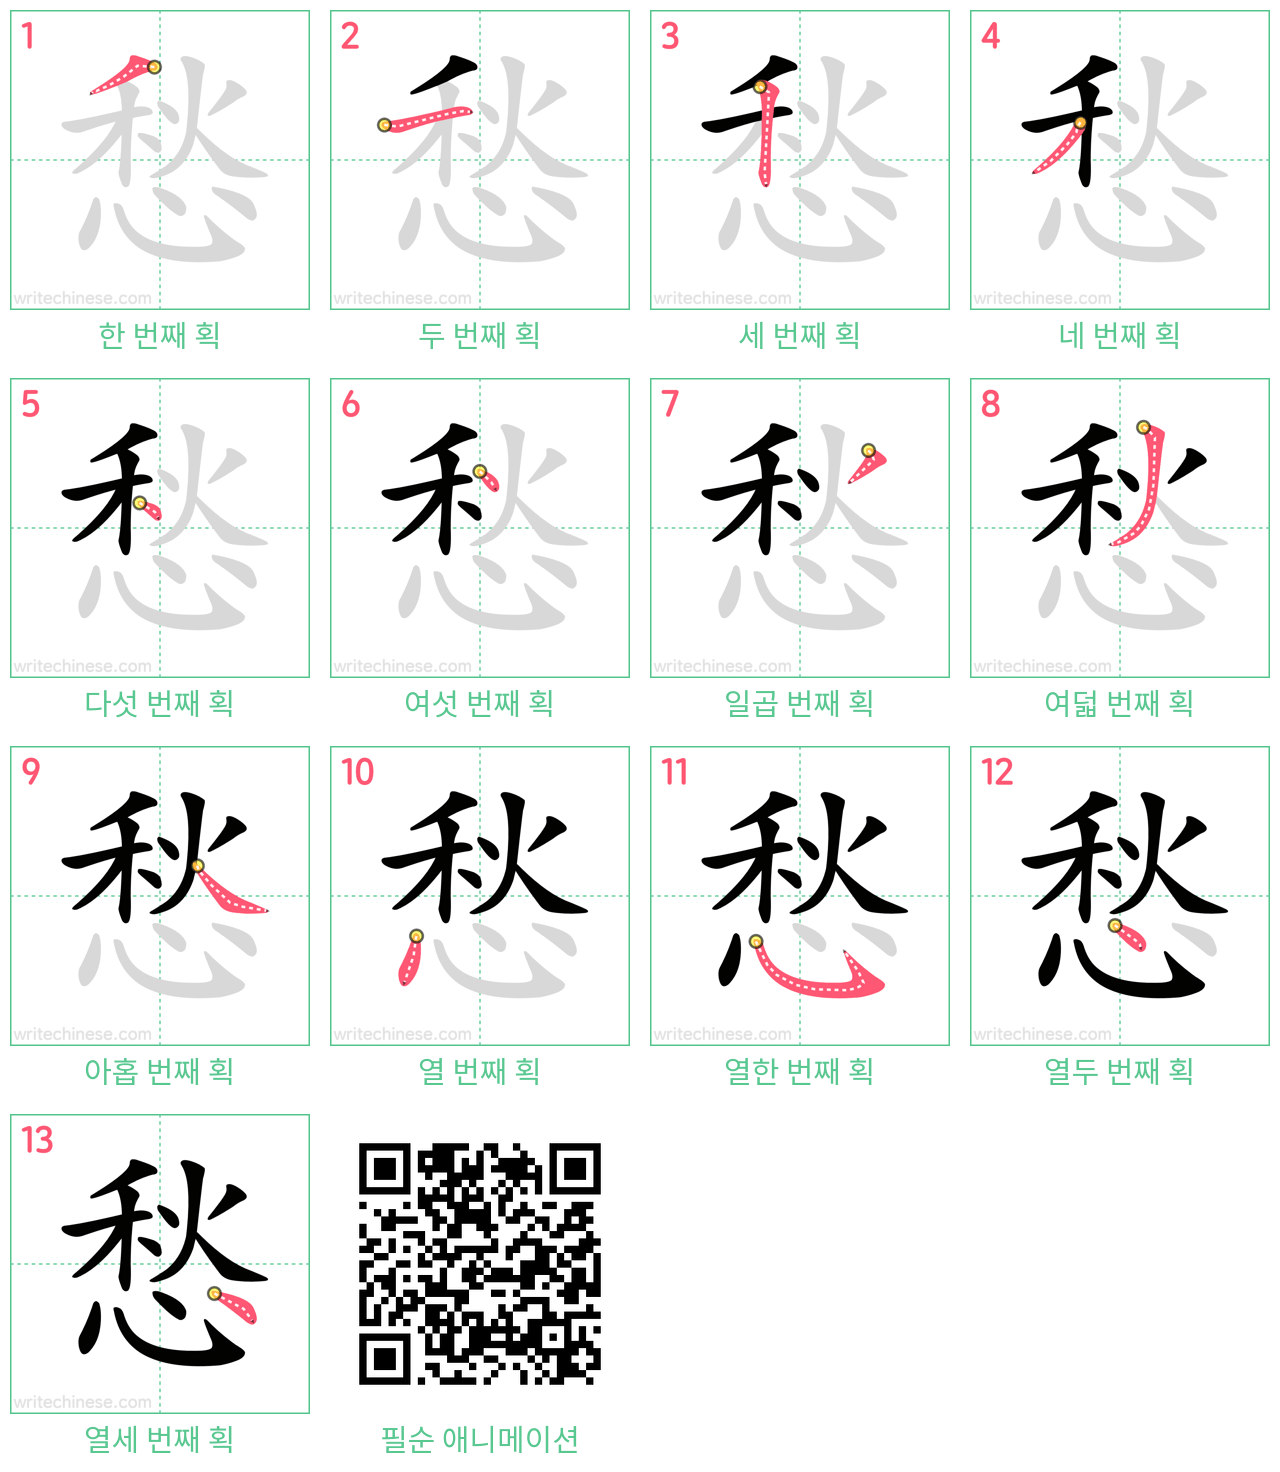 愁 step-by-step stroke order diagrams